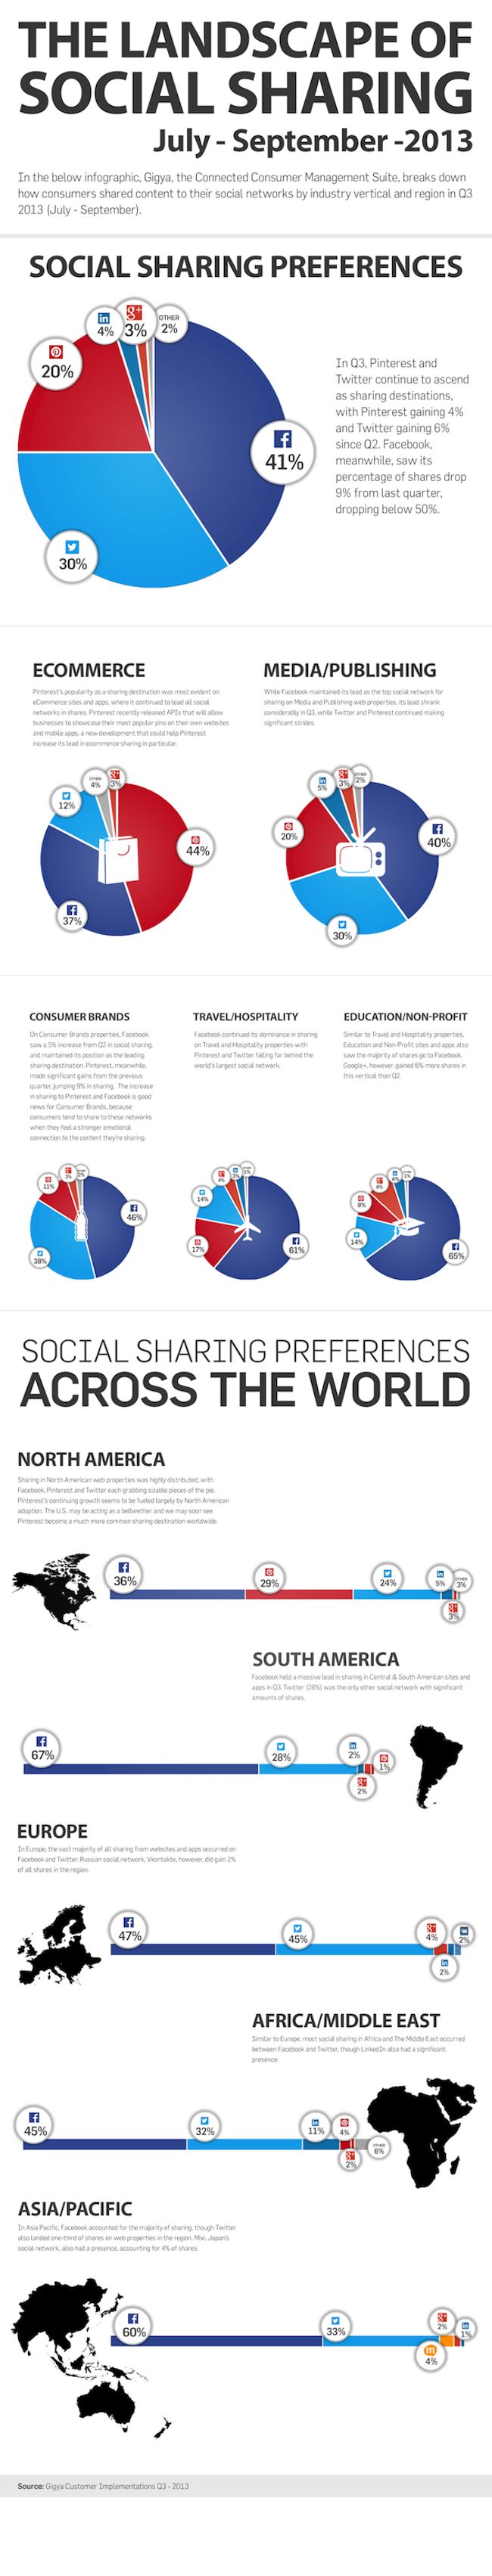 Gigya_Sharing_Infographic_Q3_2013-1